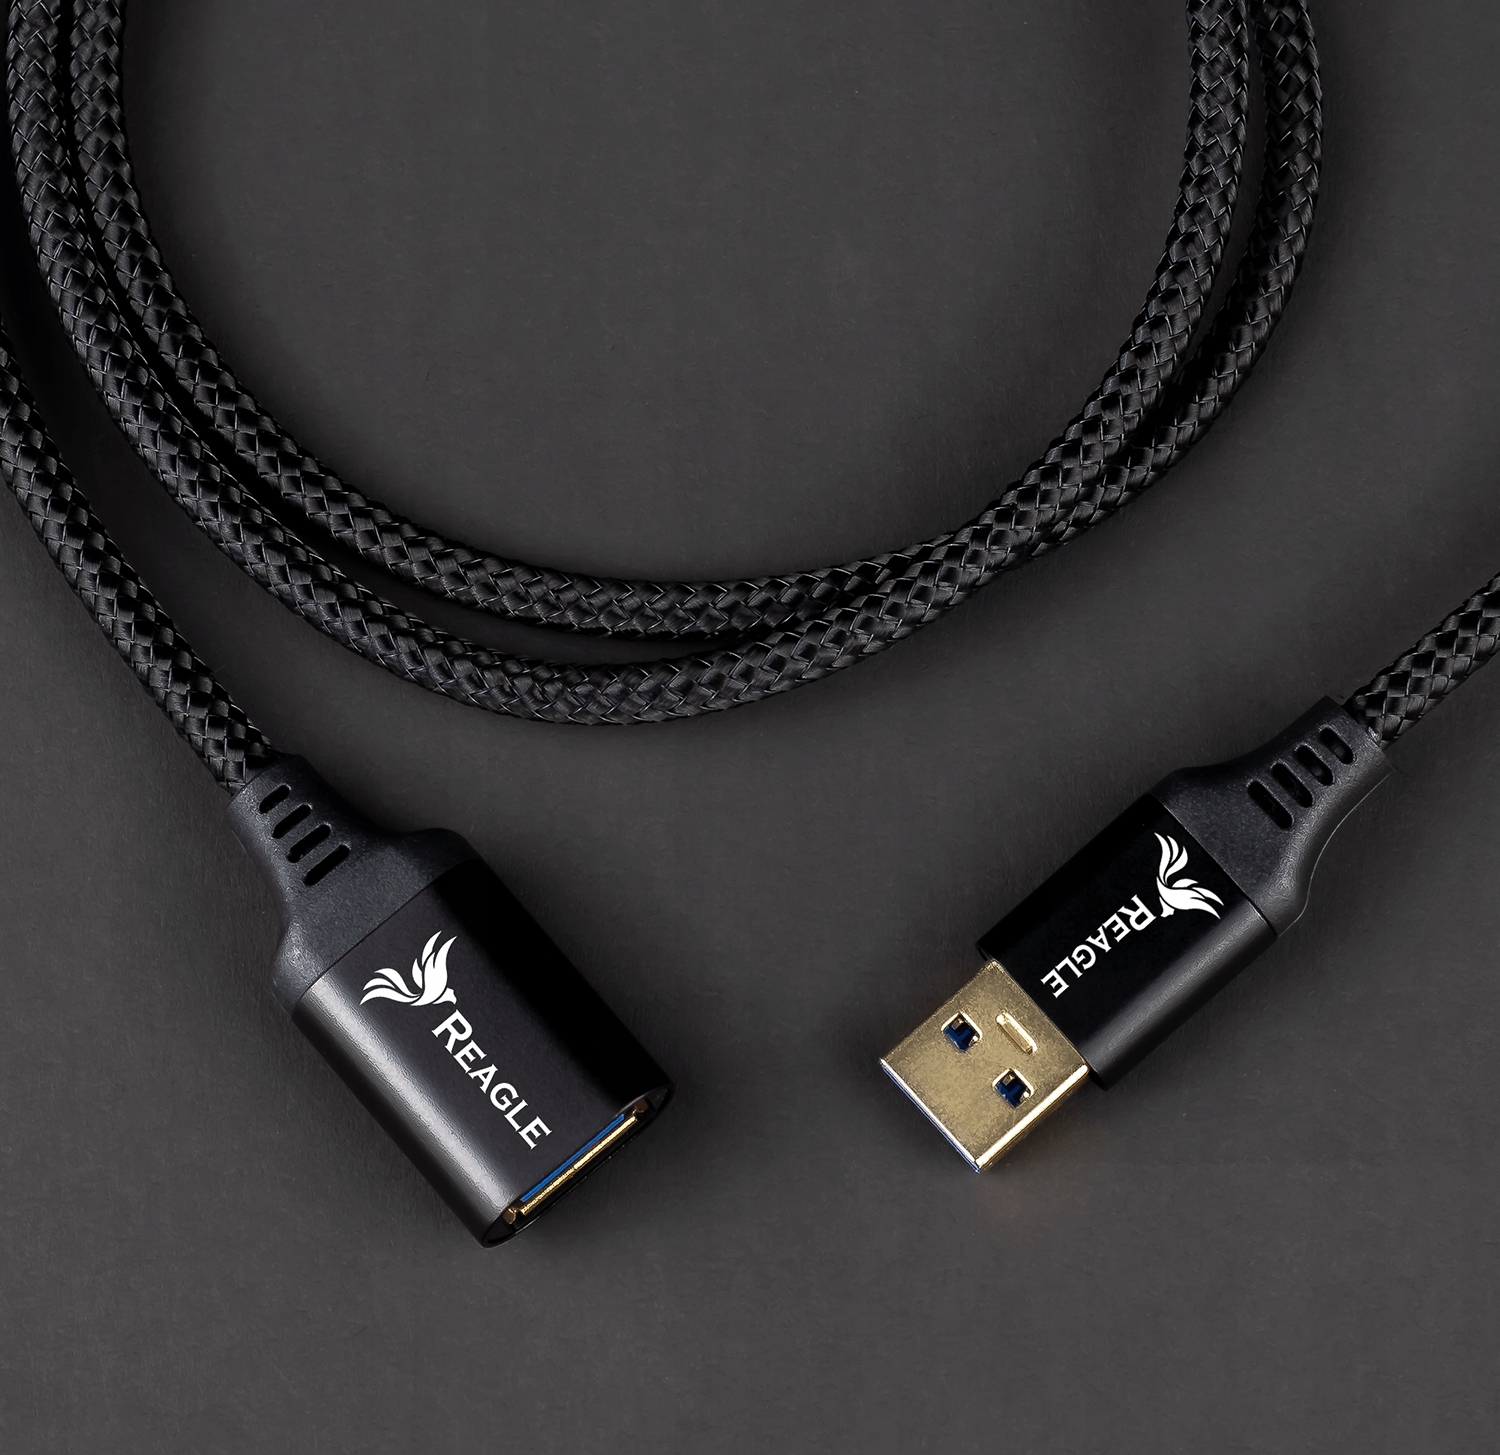 CSL - 5m câble de rallonge USB 3.0 avec amplificateur actif répéteur, câble  usb rallonge 5 mètres extensible, rallonge usb 5m amplifié, rallonge cable